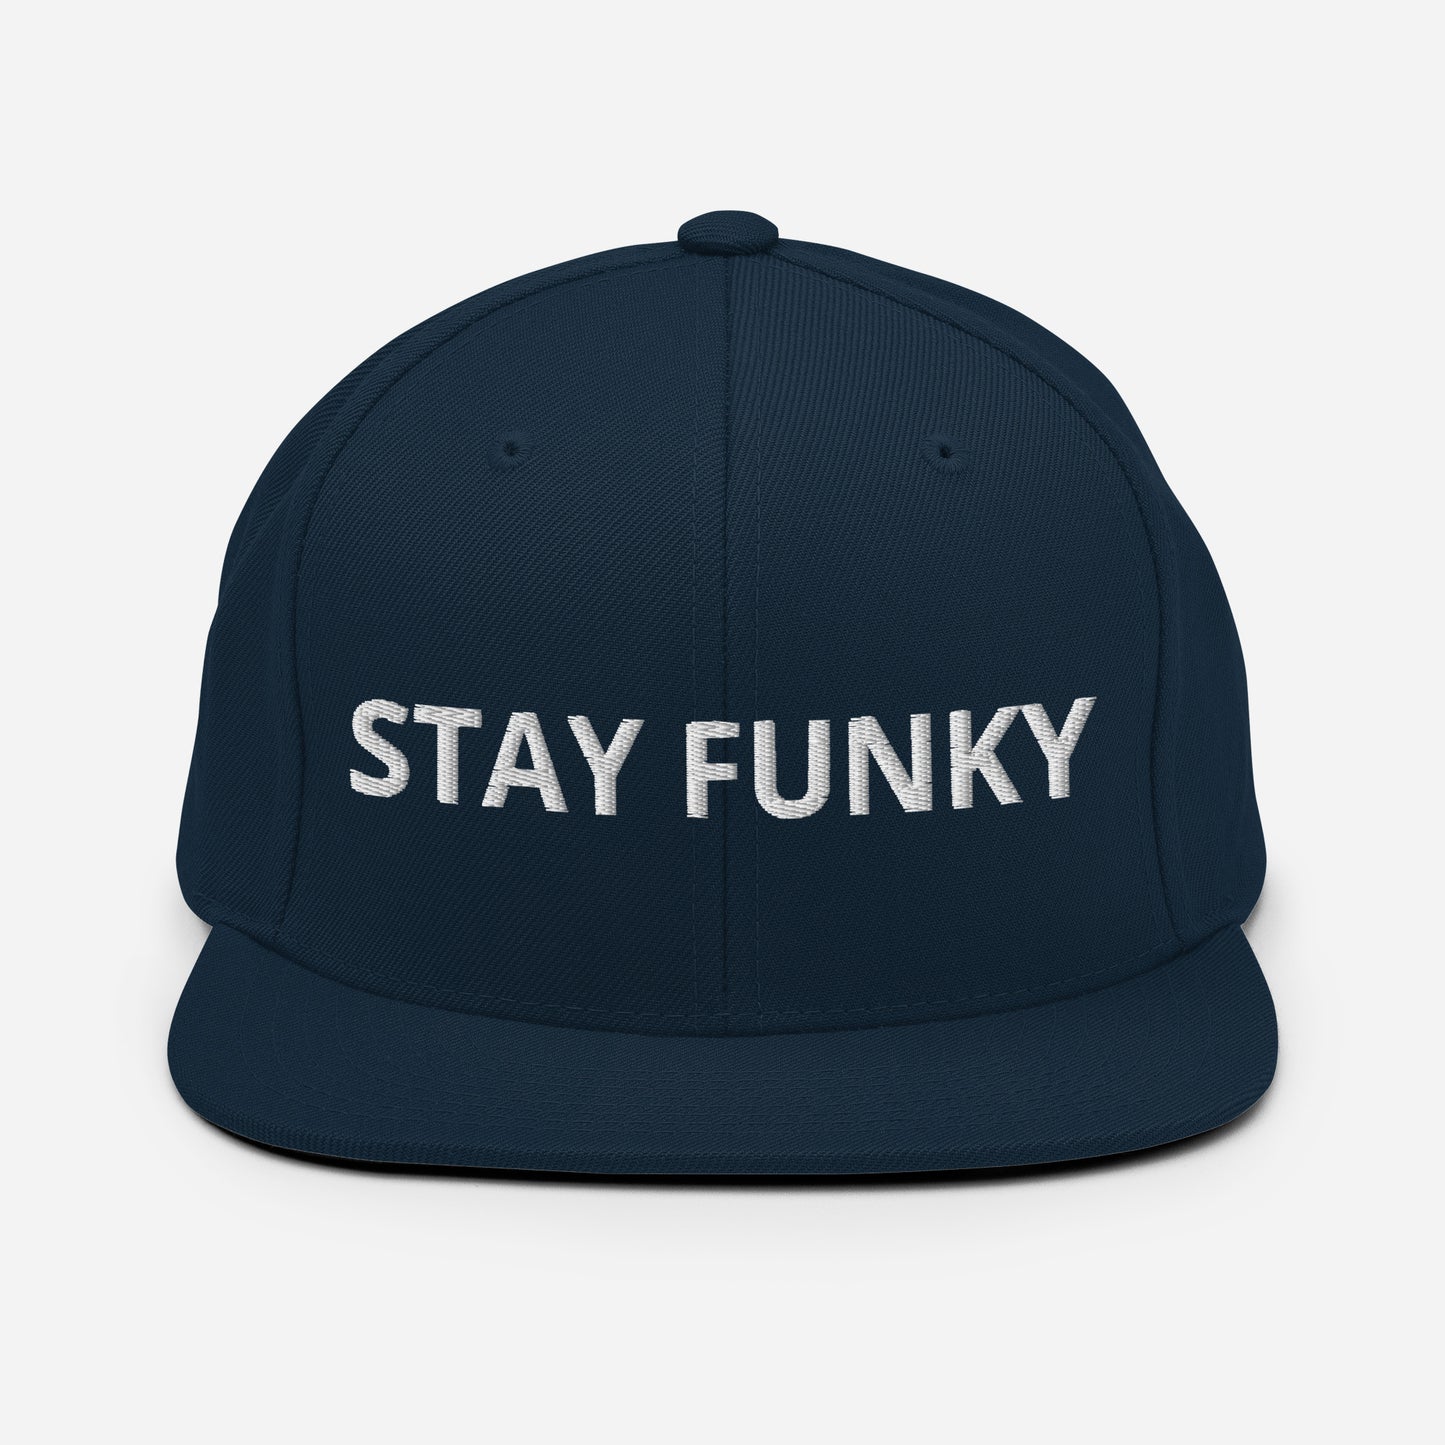 STAY FUNKY Flat Bill Hat